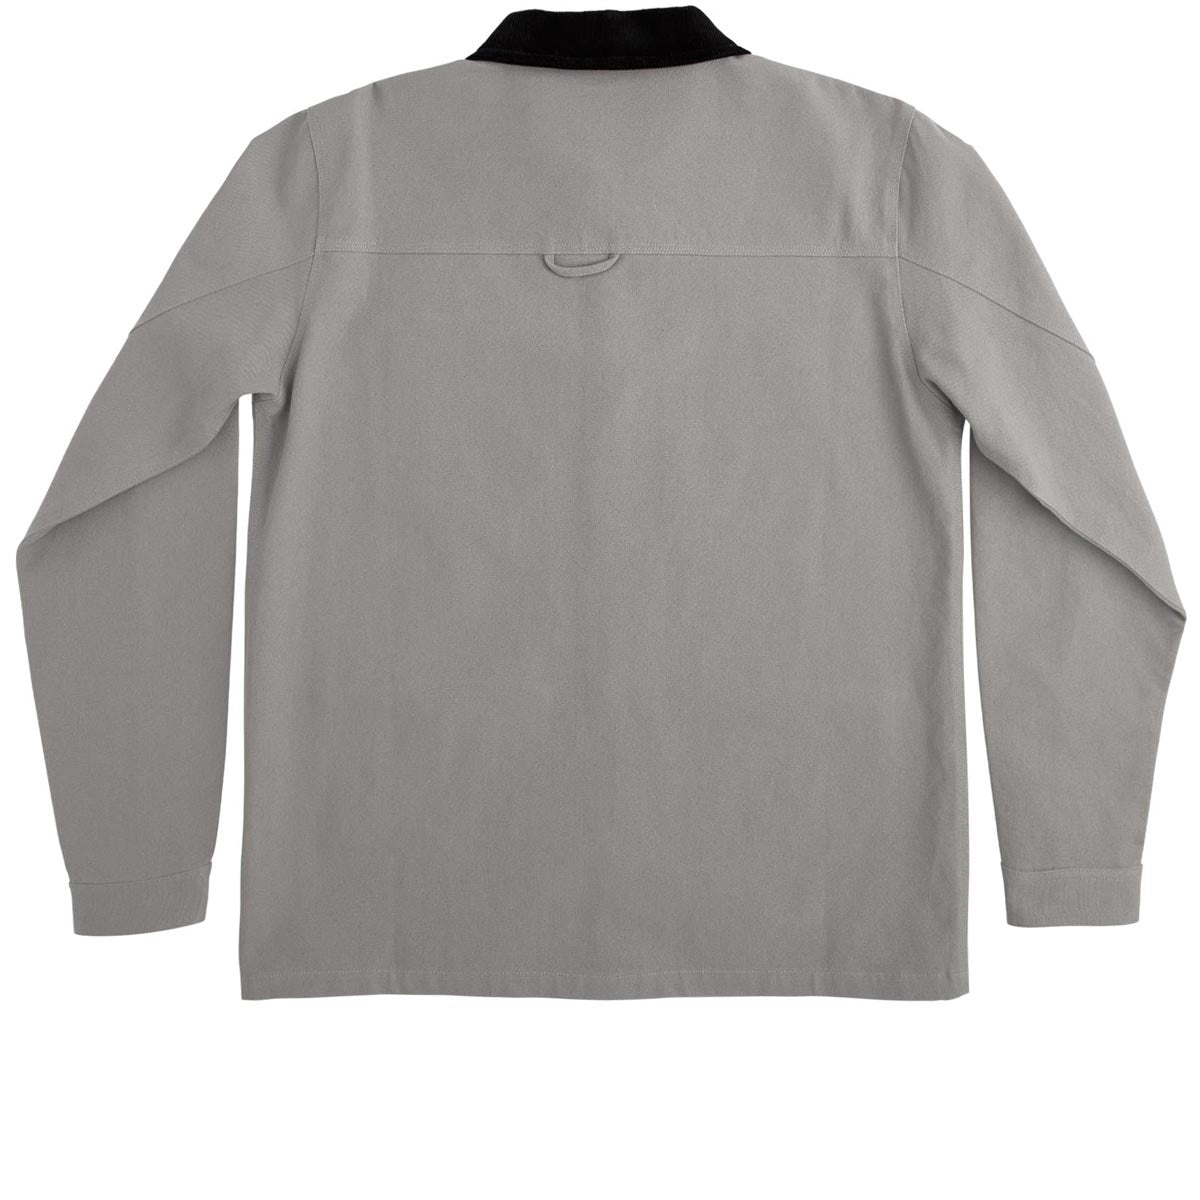 Independent Springer Chore Jacket - Grey image 4